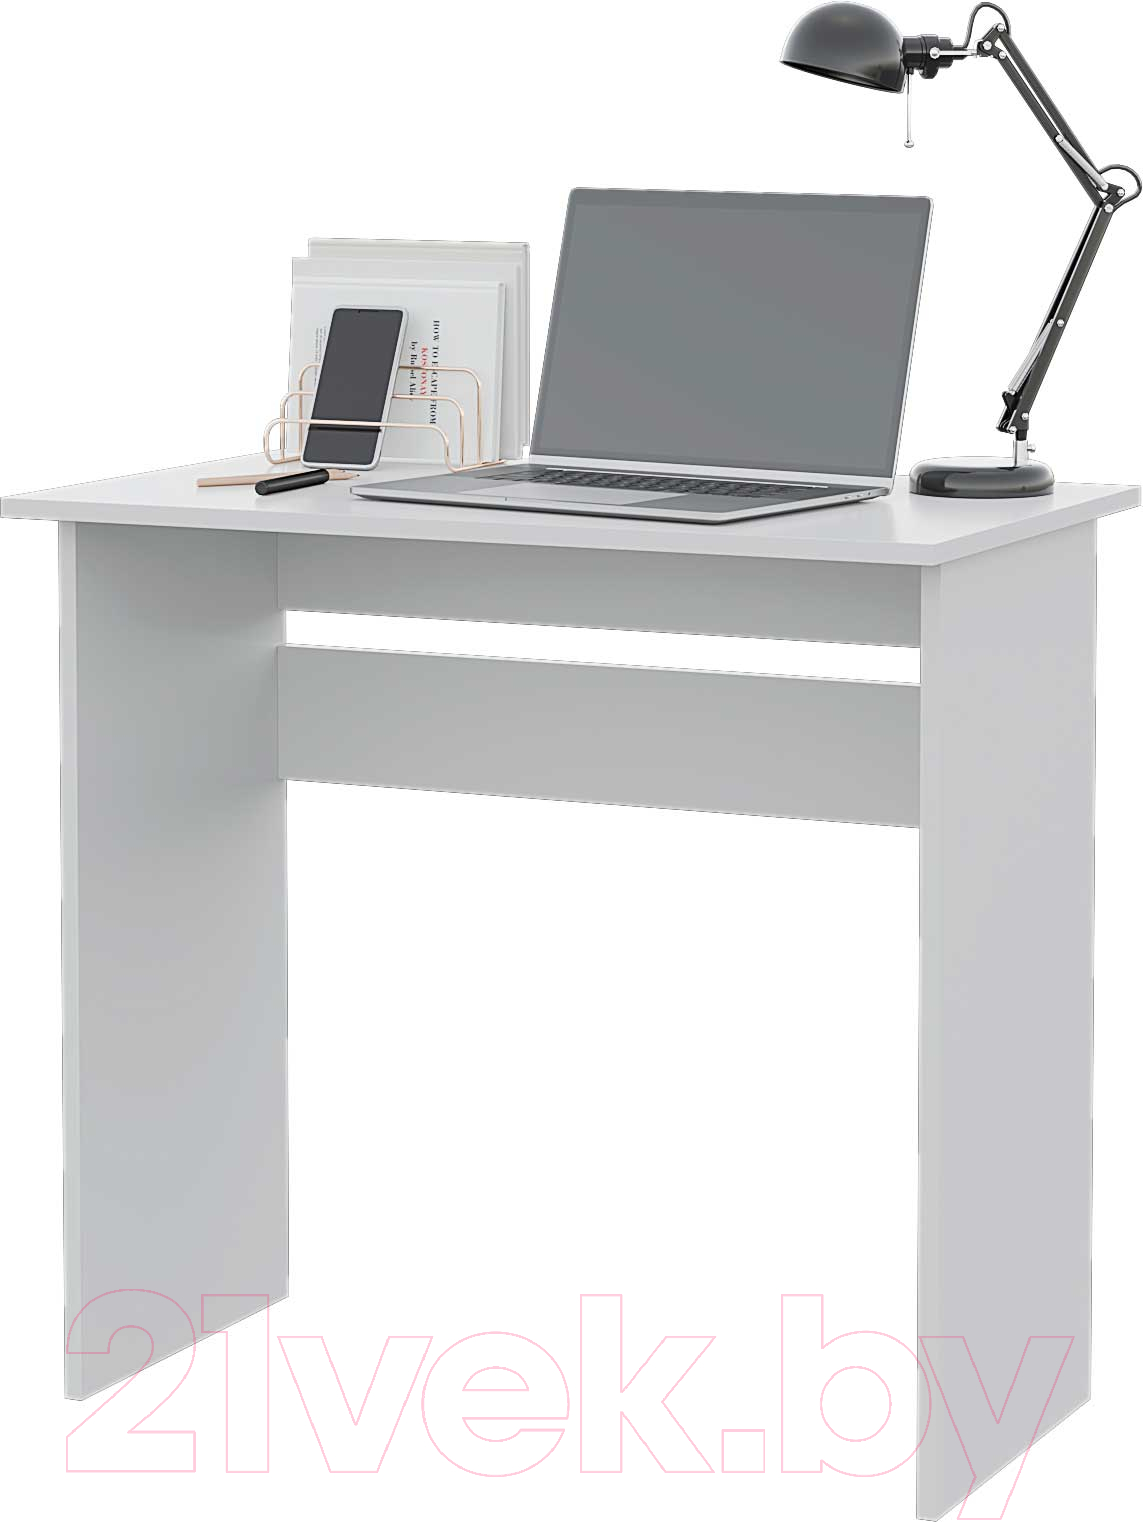 Письменный стол Горизонт Мебель Asti 1